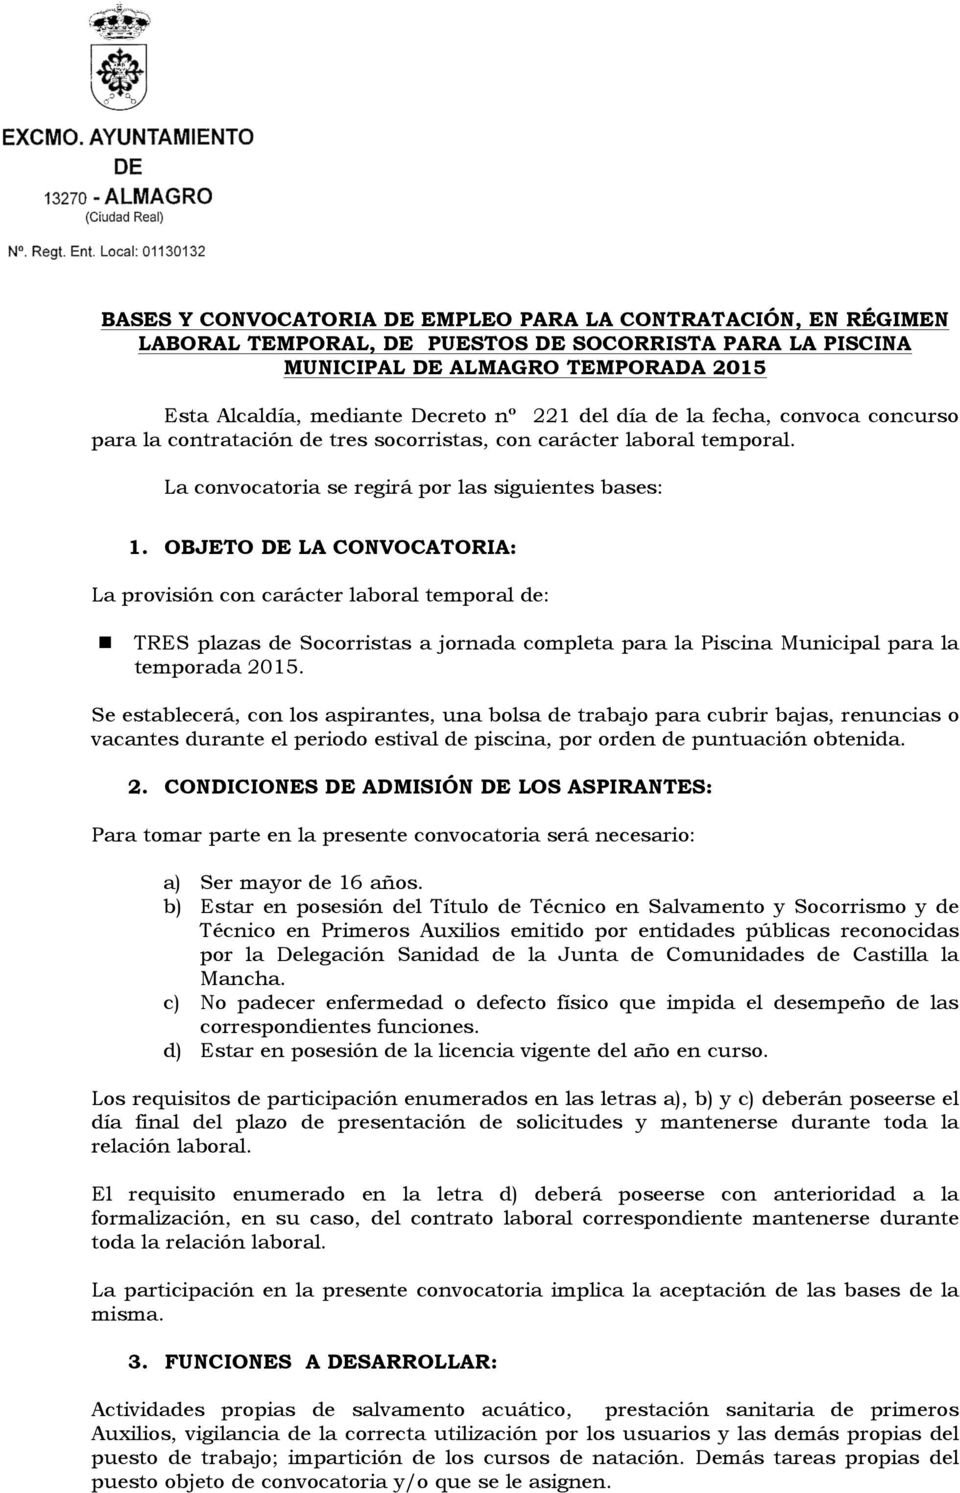 OBJETO DE LA CONVOCATORIA: La provisión con carácter laboral temporal de: n TRES plazas de Socorristas a jornada completa para la Piscina Municipal para la temporada 2015.